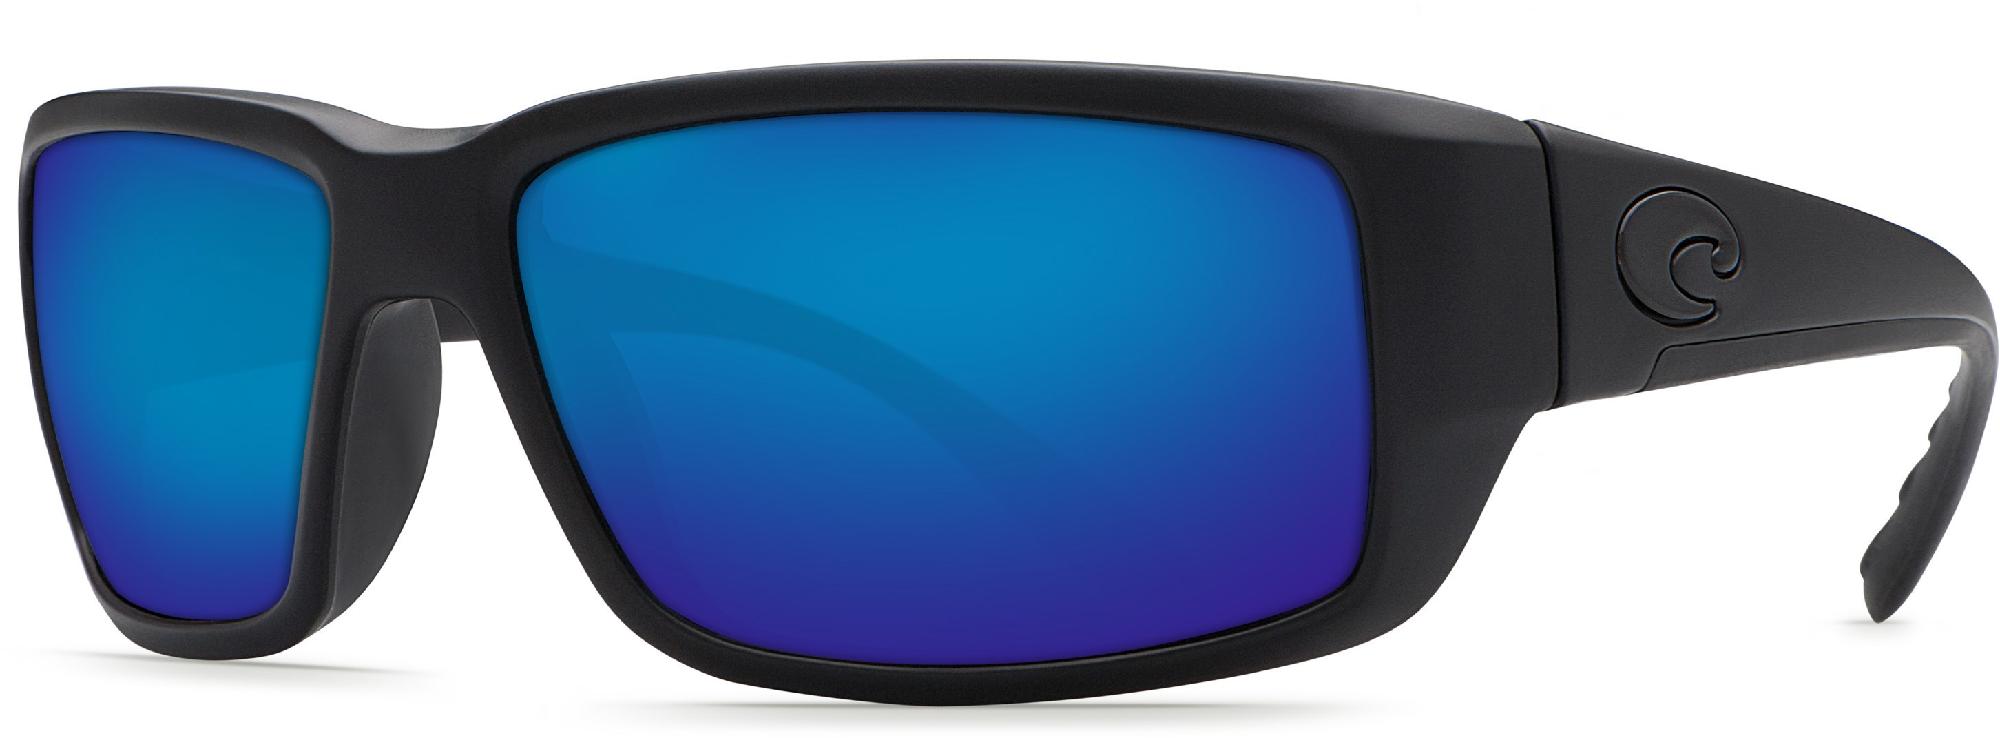 Поляризованные солнцезащитные очки Fantail COSTA, черный